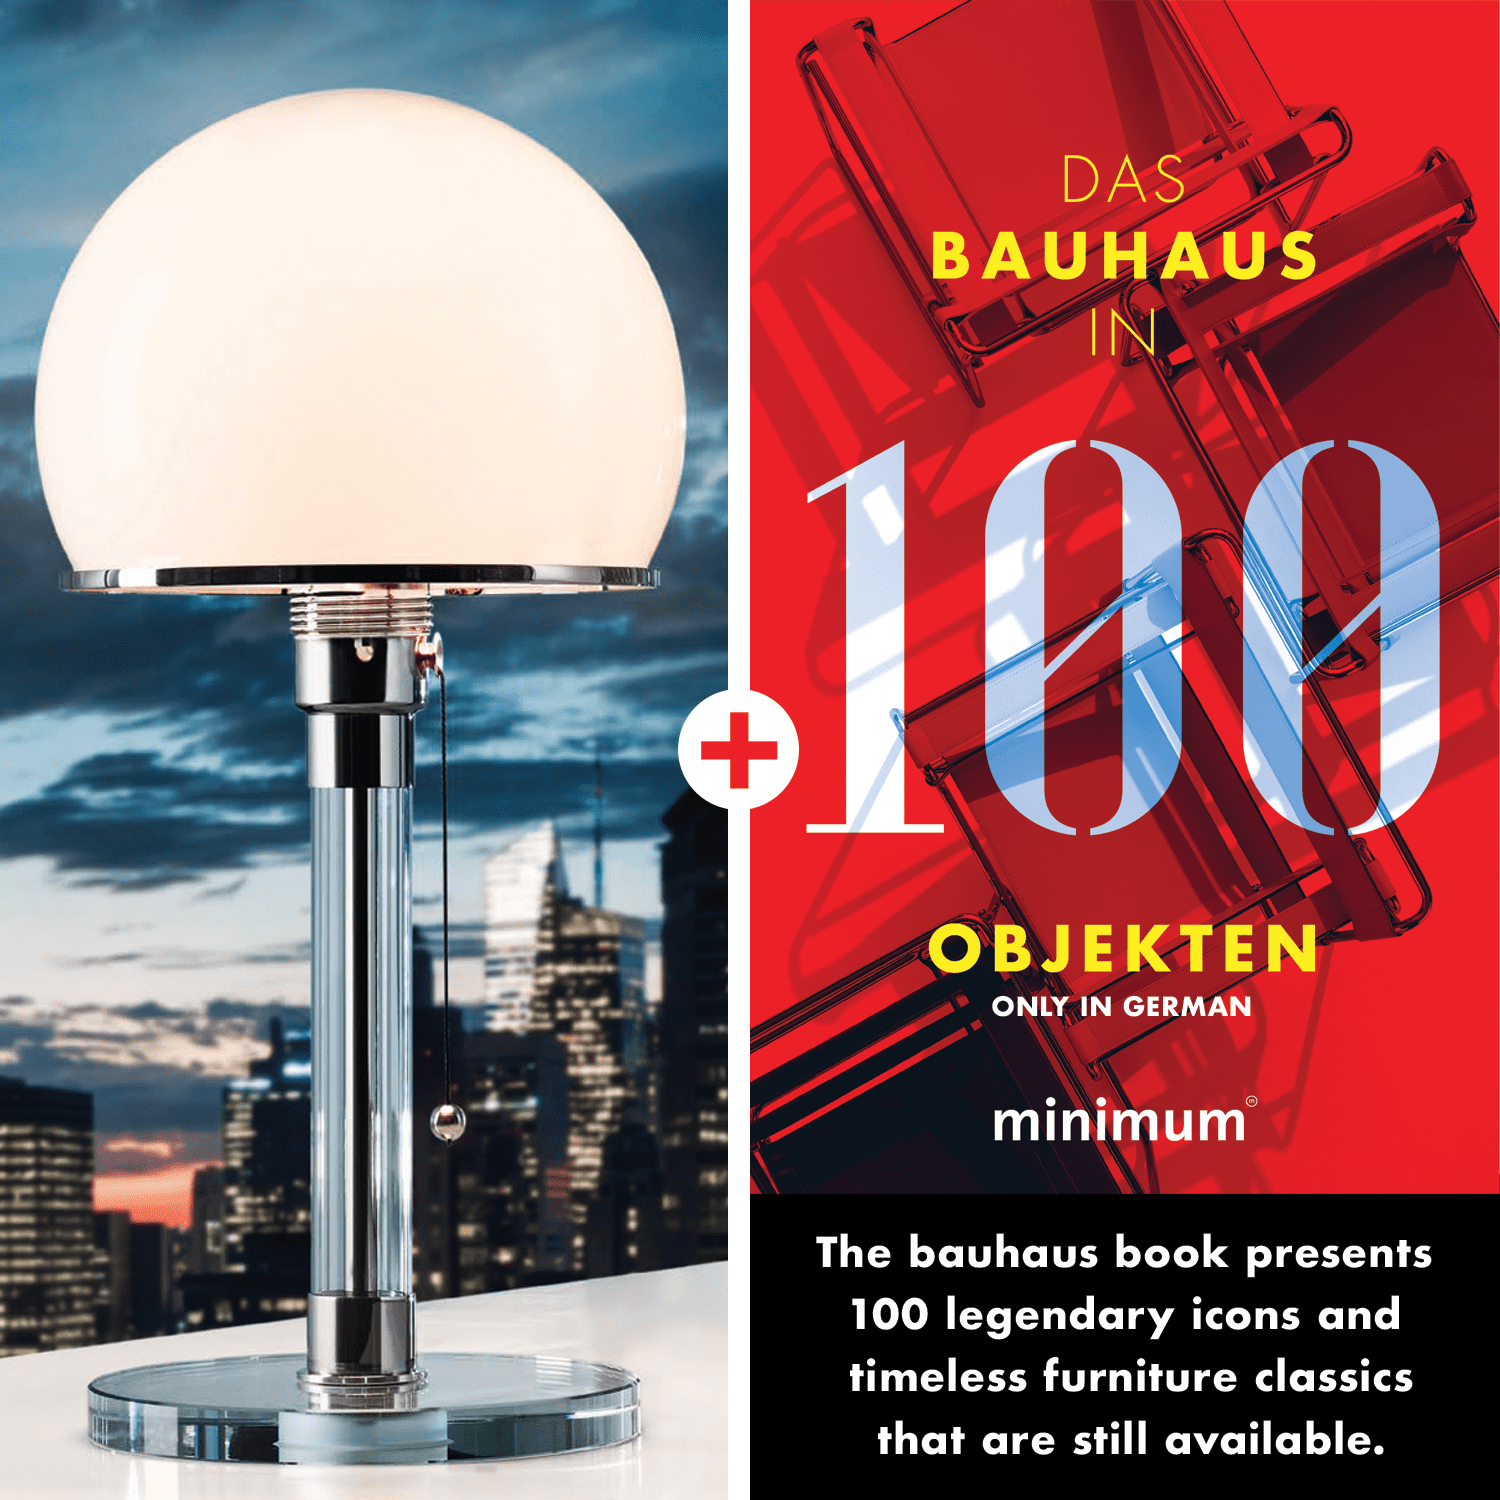 Bild von Wagenfeld Lampe WG 24 + Bauhaus in 100 Objekten